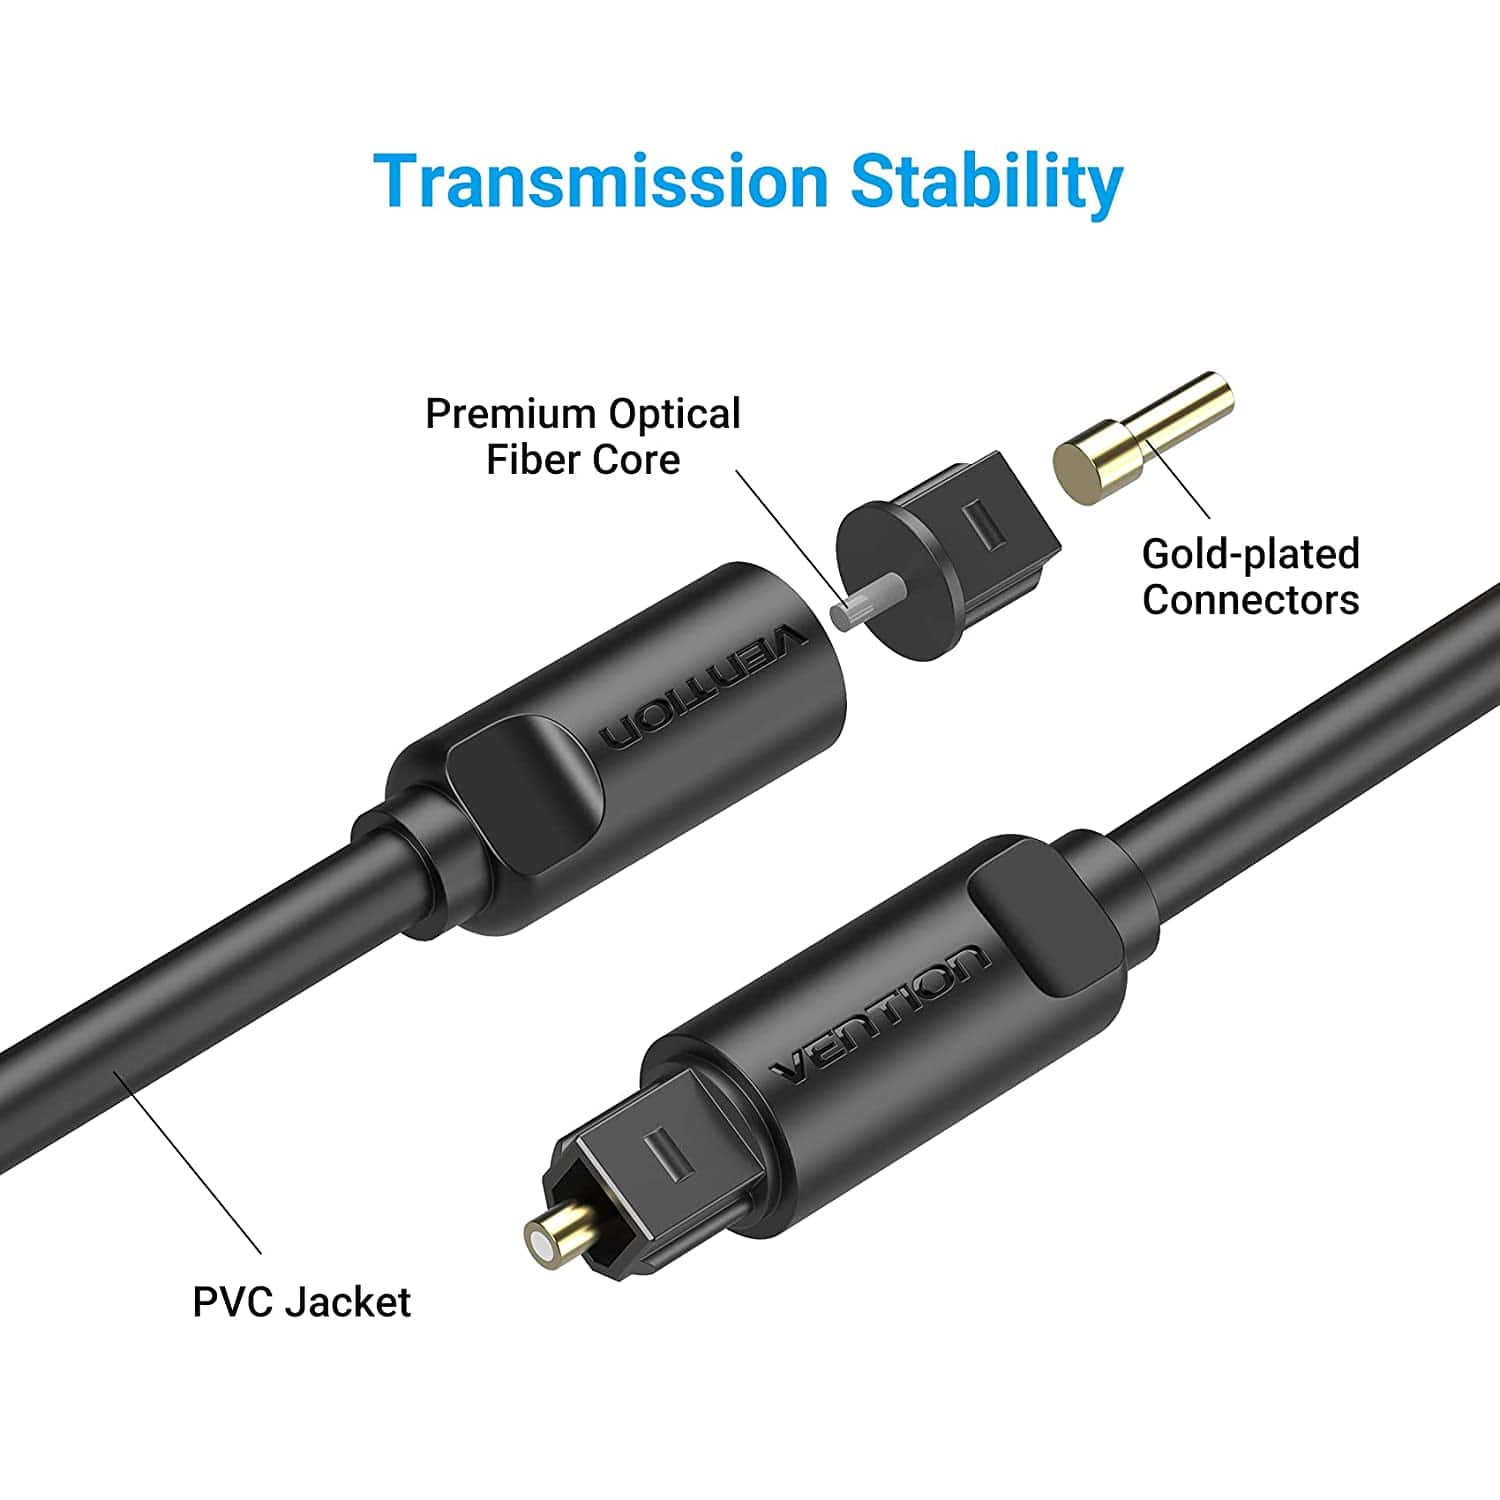 Cable Audio Optique Premium 3M UGREEN - Noir